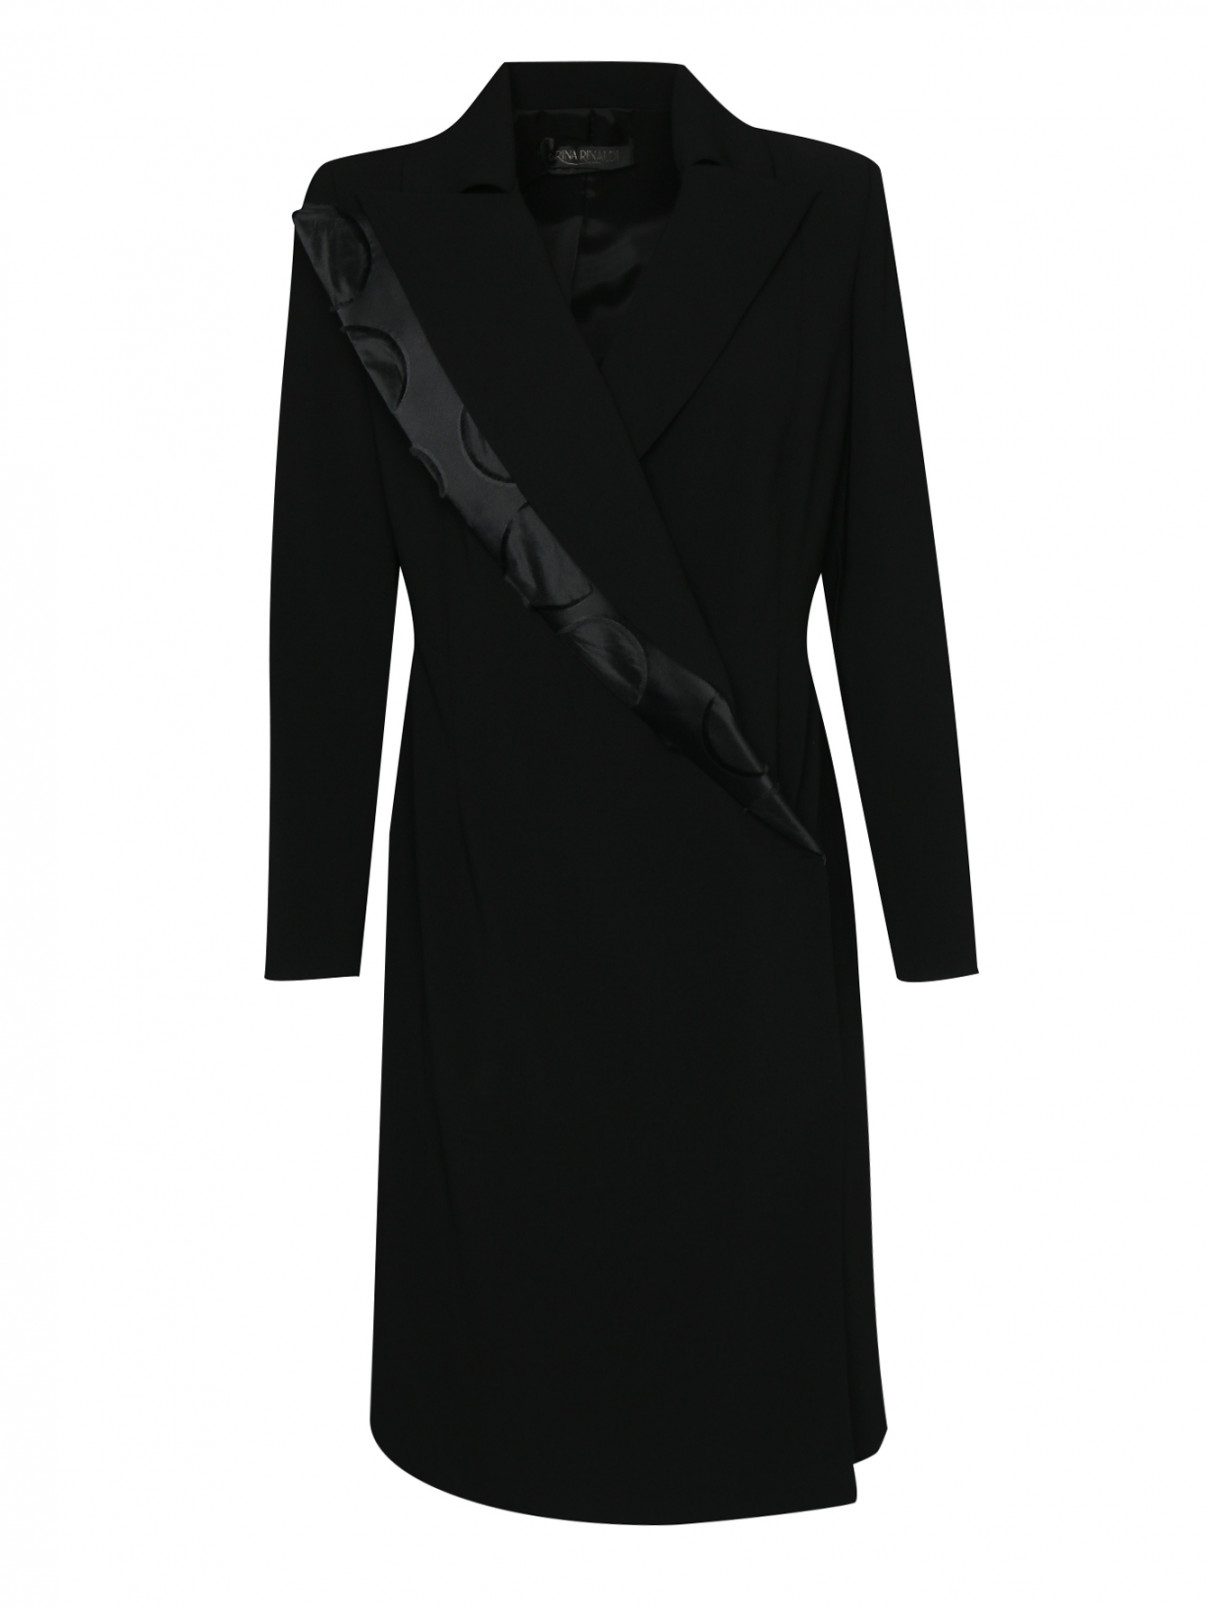 Платье-жакет, с запахом Marina Rinaldi  –  Общий вид  – Цвет:  Черный